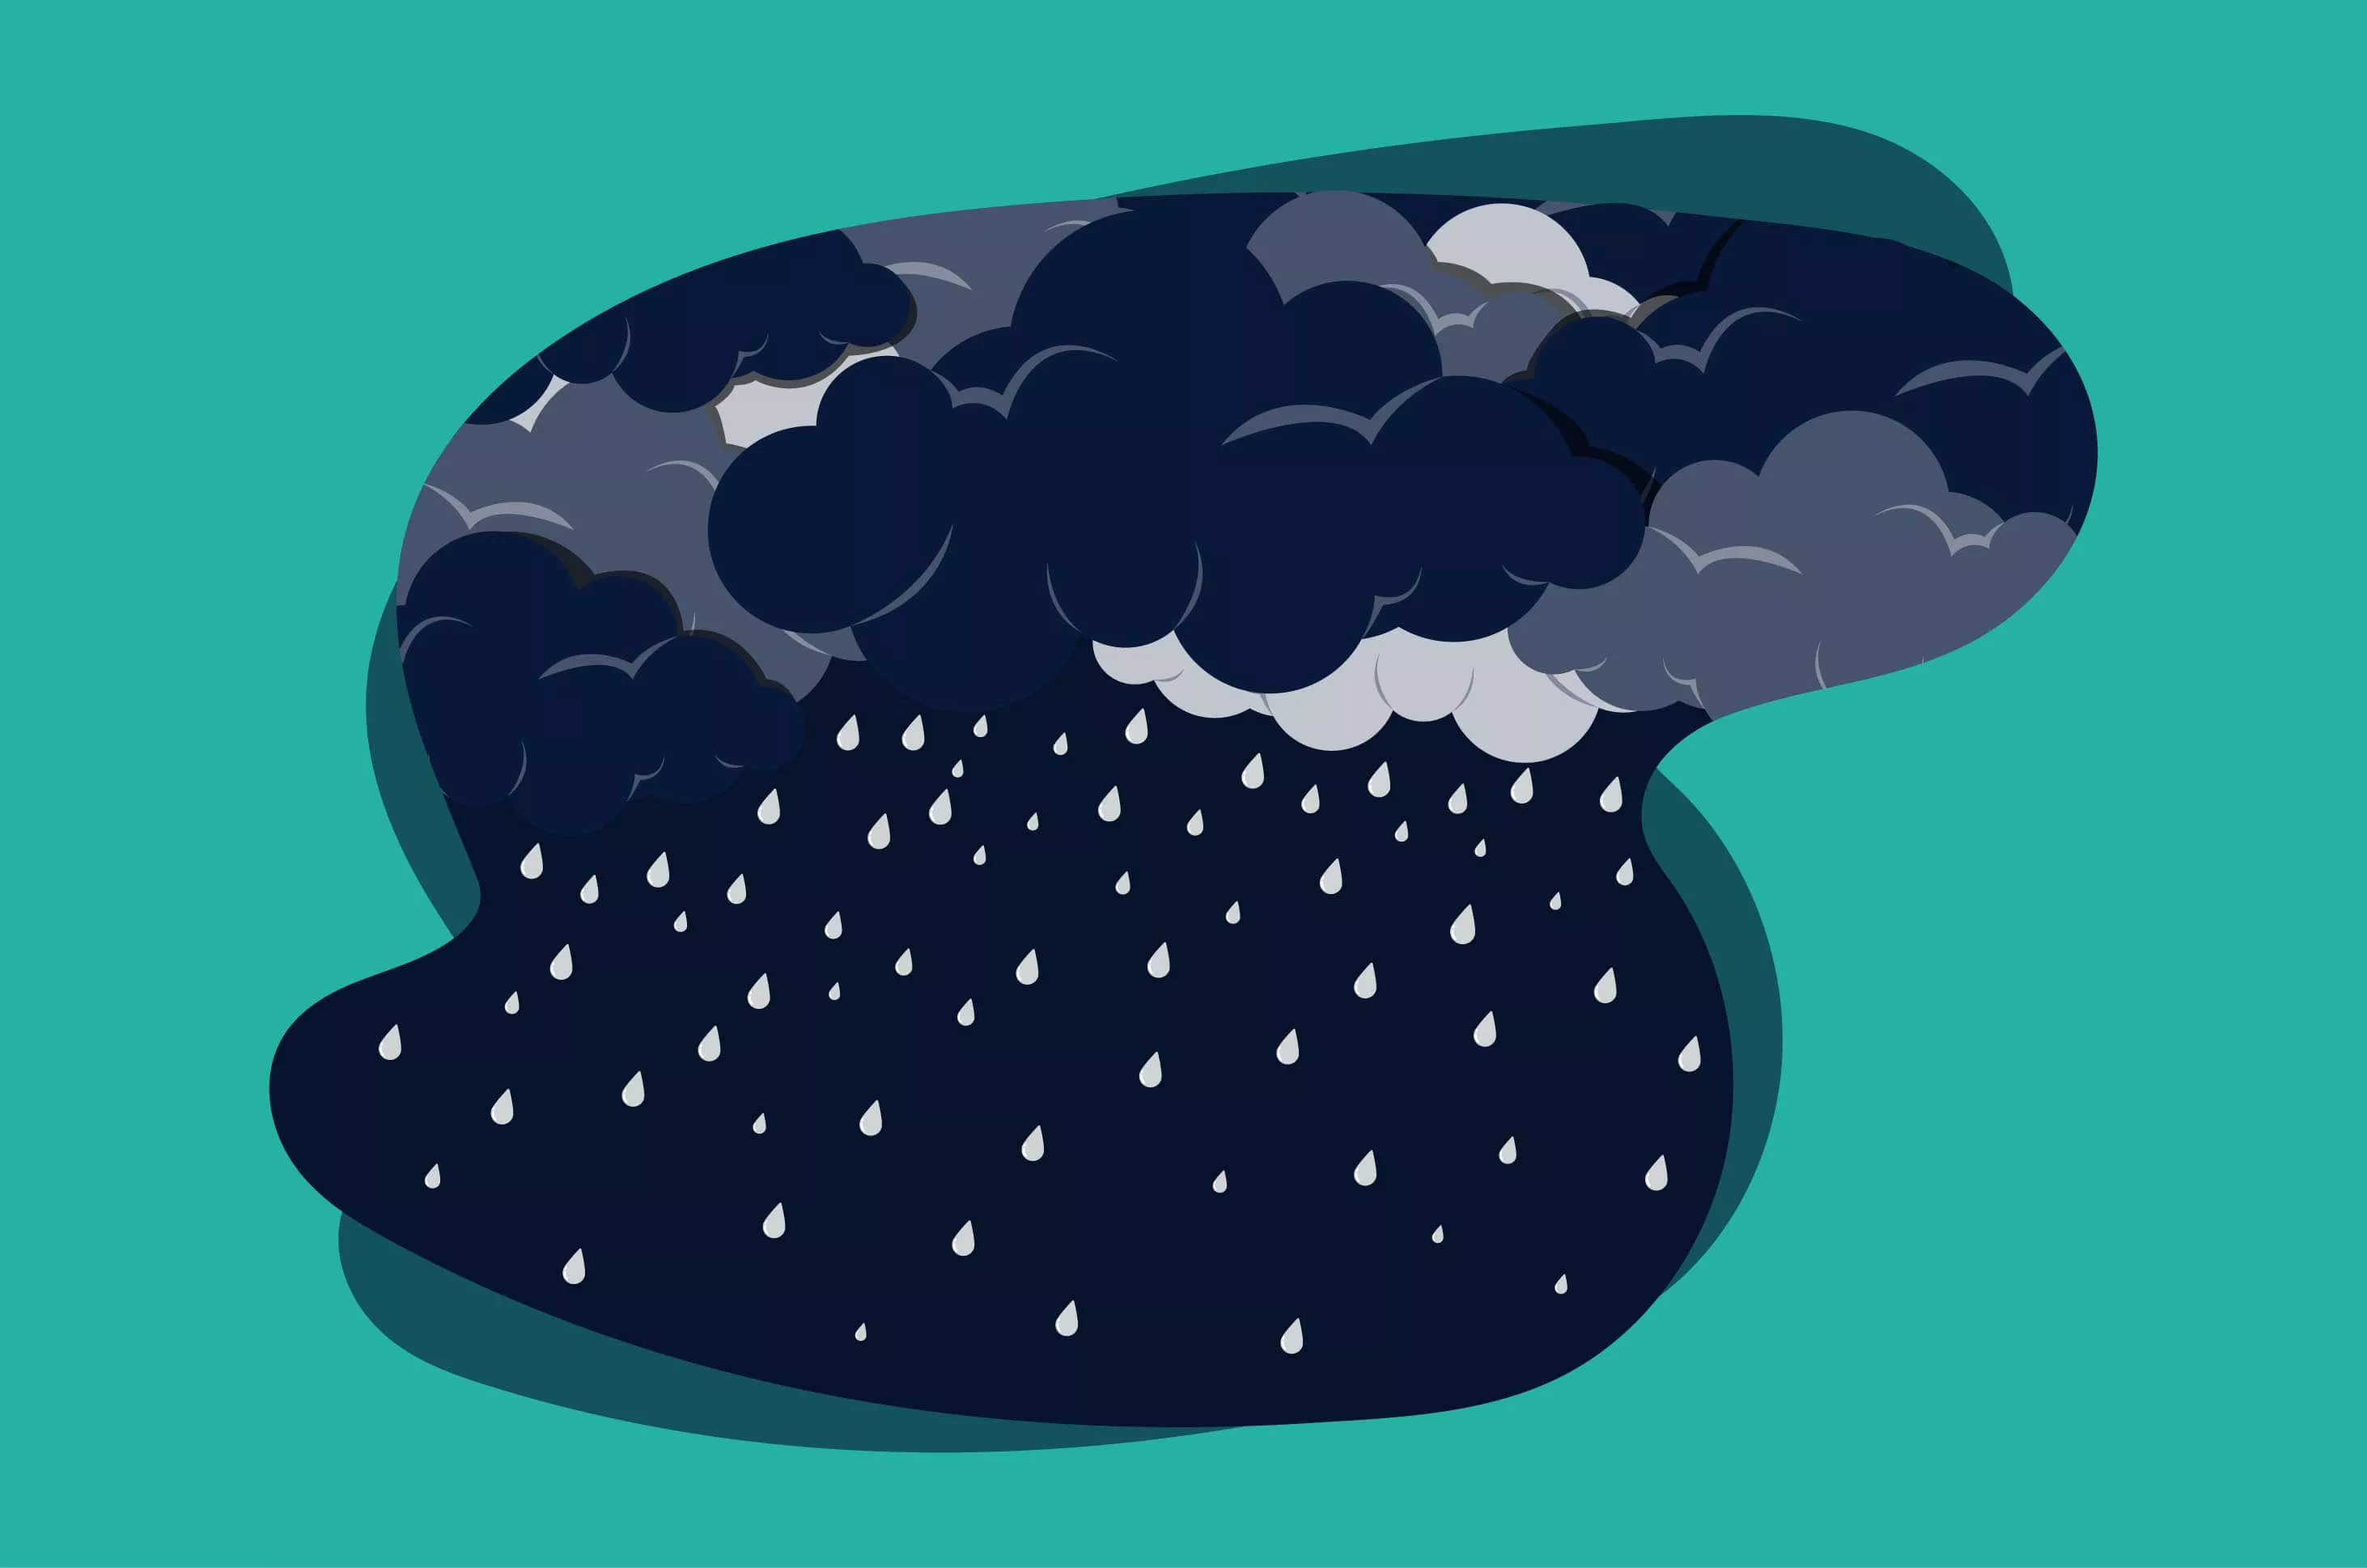 Apa Benar Hujan dan Cuaca Bisa Memengaruhi Mood?